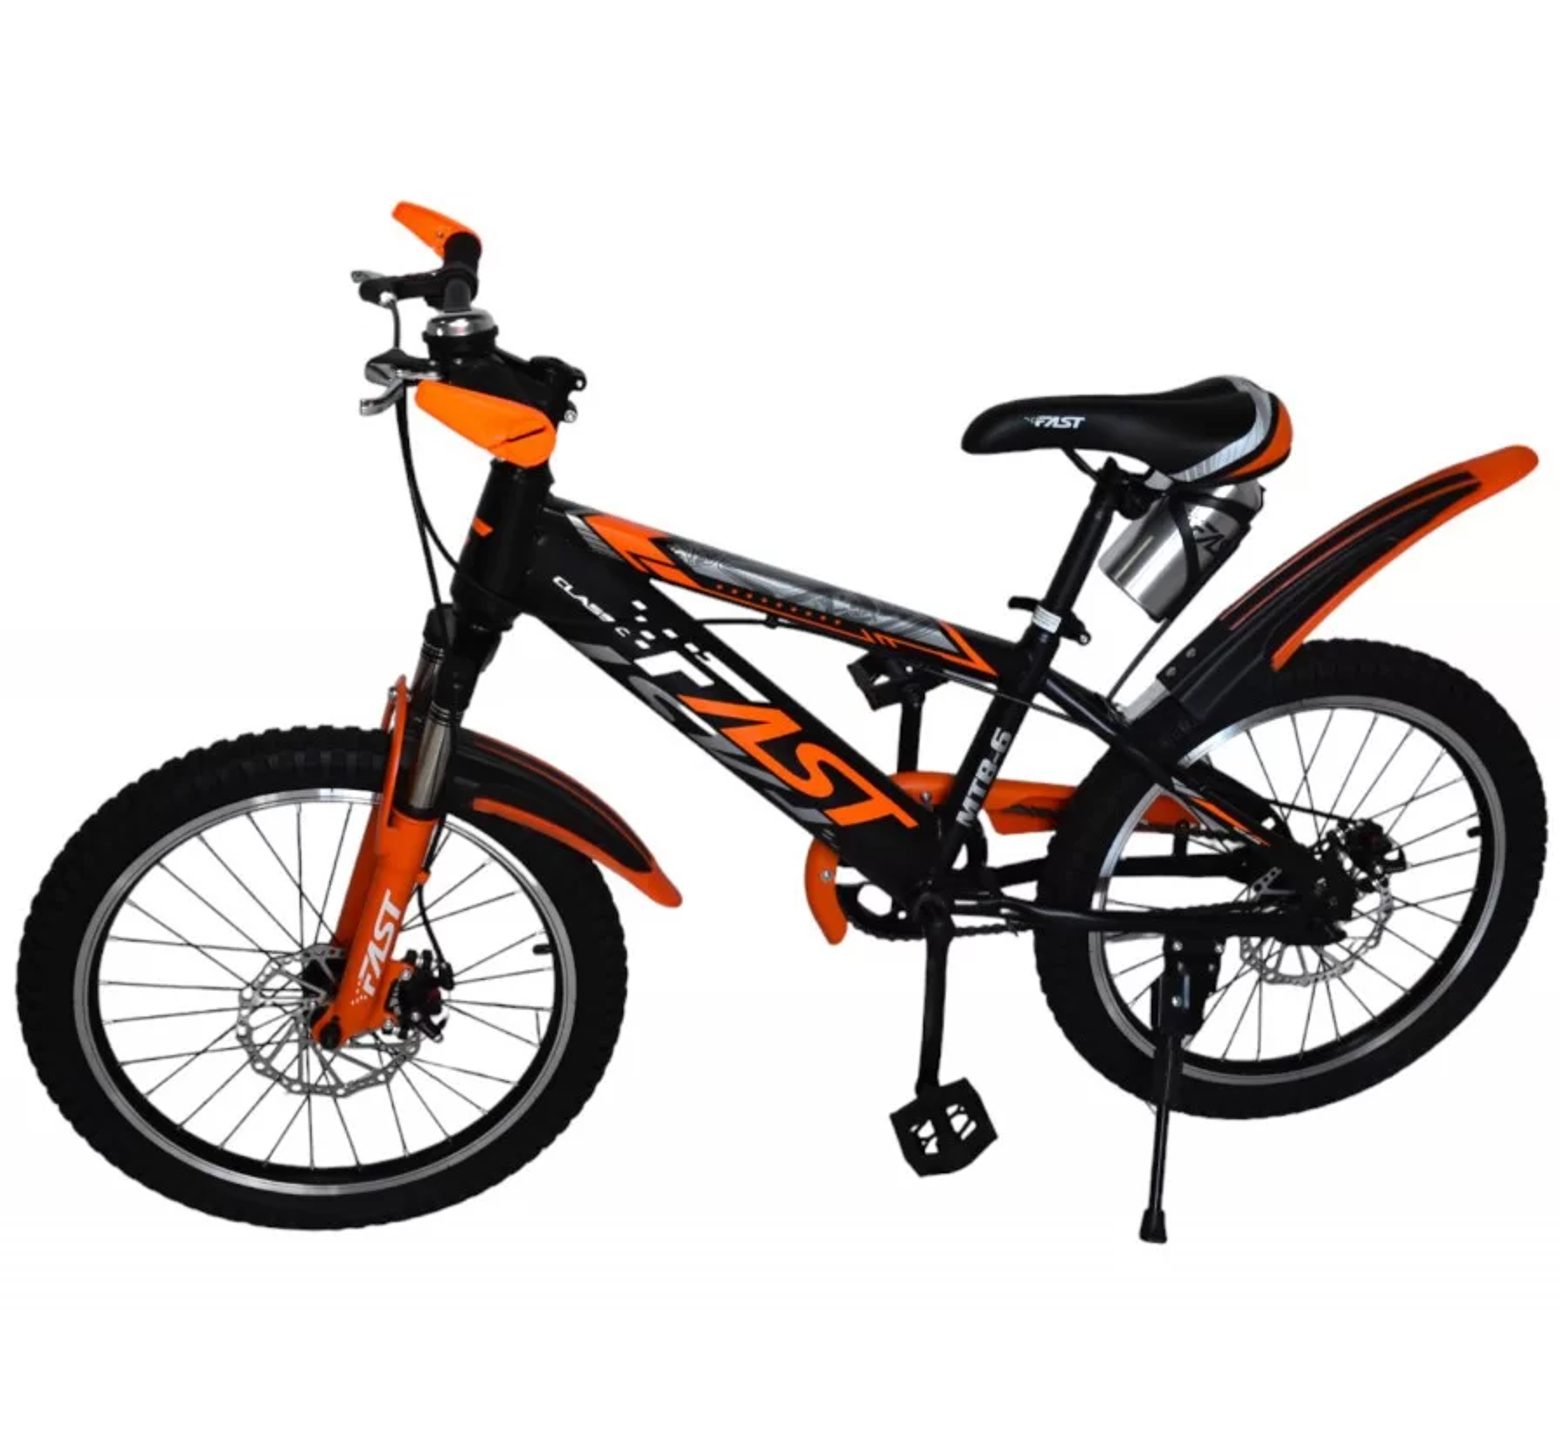 Ποδήλατο mountain 20 ιντσών με ταχύτητες δισκόφρενα και ανάρτηση σε μαύρο πορτοκαλί χρώμα